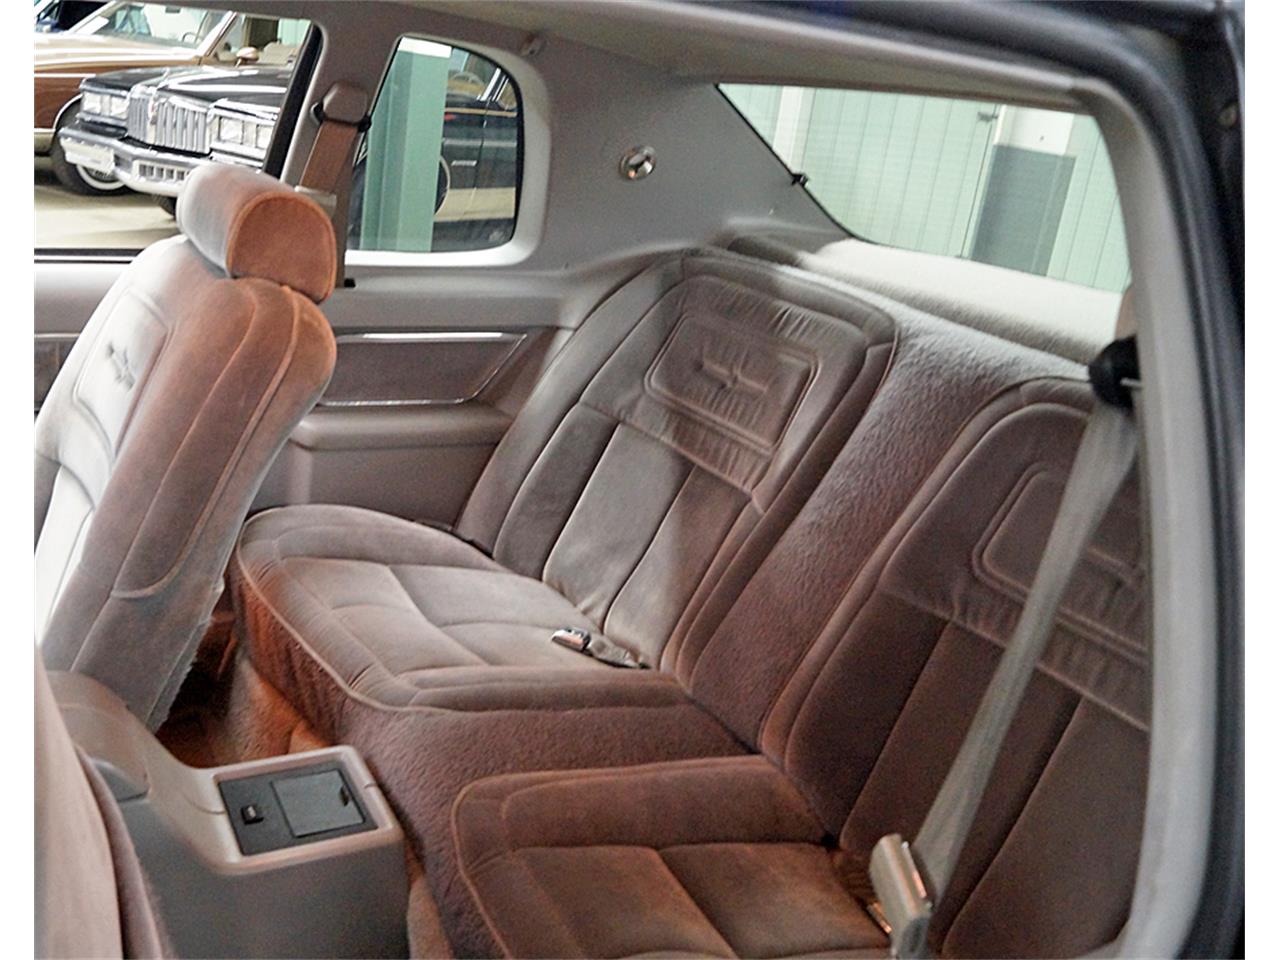 1984 ford thunderbird interior